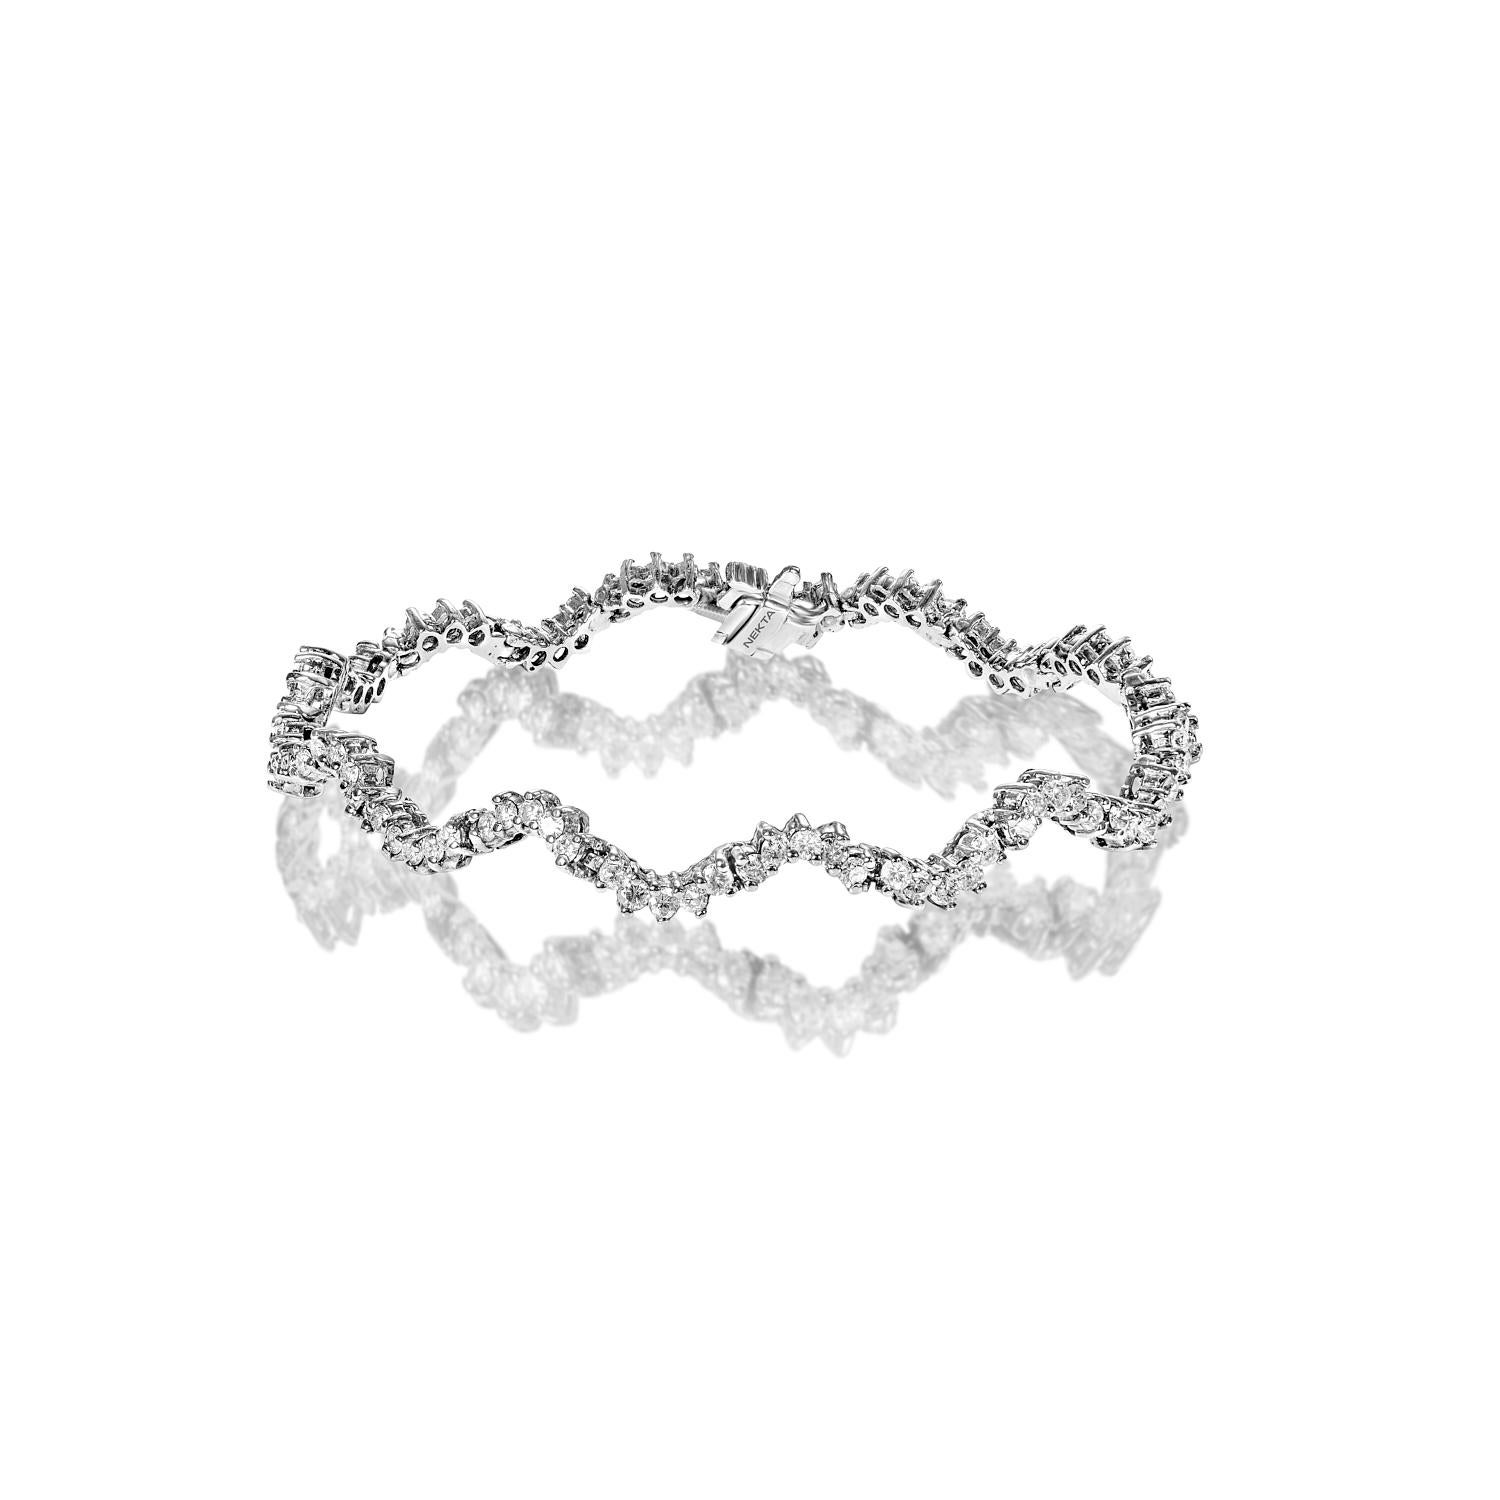 Le OAKLYN 3.34 Carat Single Row Diamond Tennis Bracelet présente des DIAMONDS RONDS BRILLIANT CUT brilliants pesant un total d'environ 3.34 carats, sertis dans de l'or blanc 14K.

Style : Bracelet de tennis à un rang de diamants


Diamants
Taille du